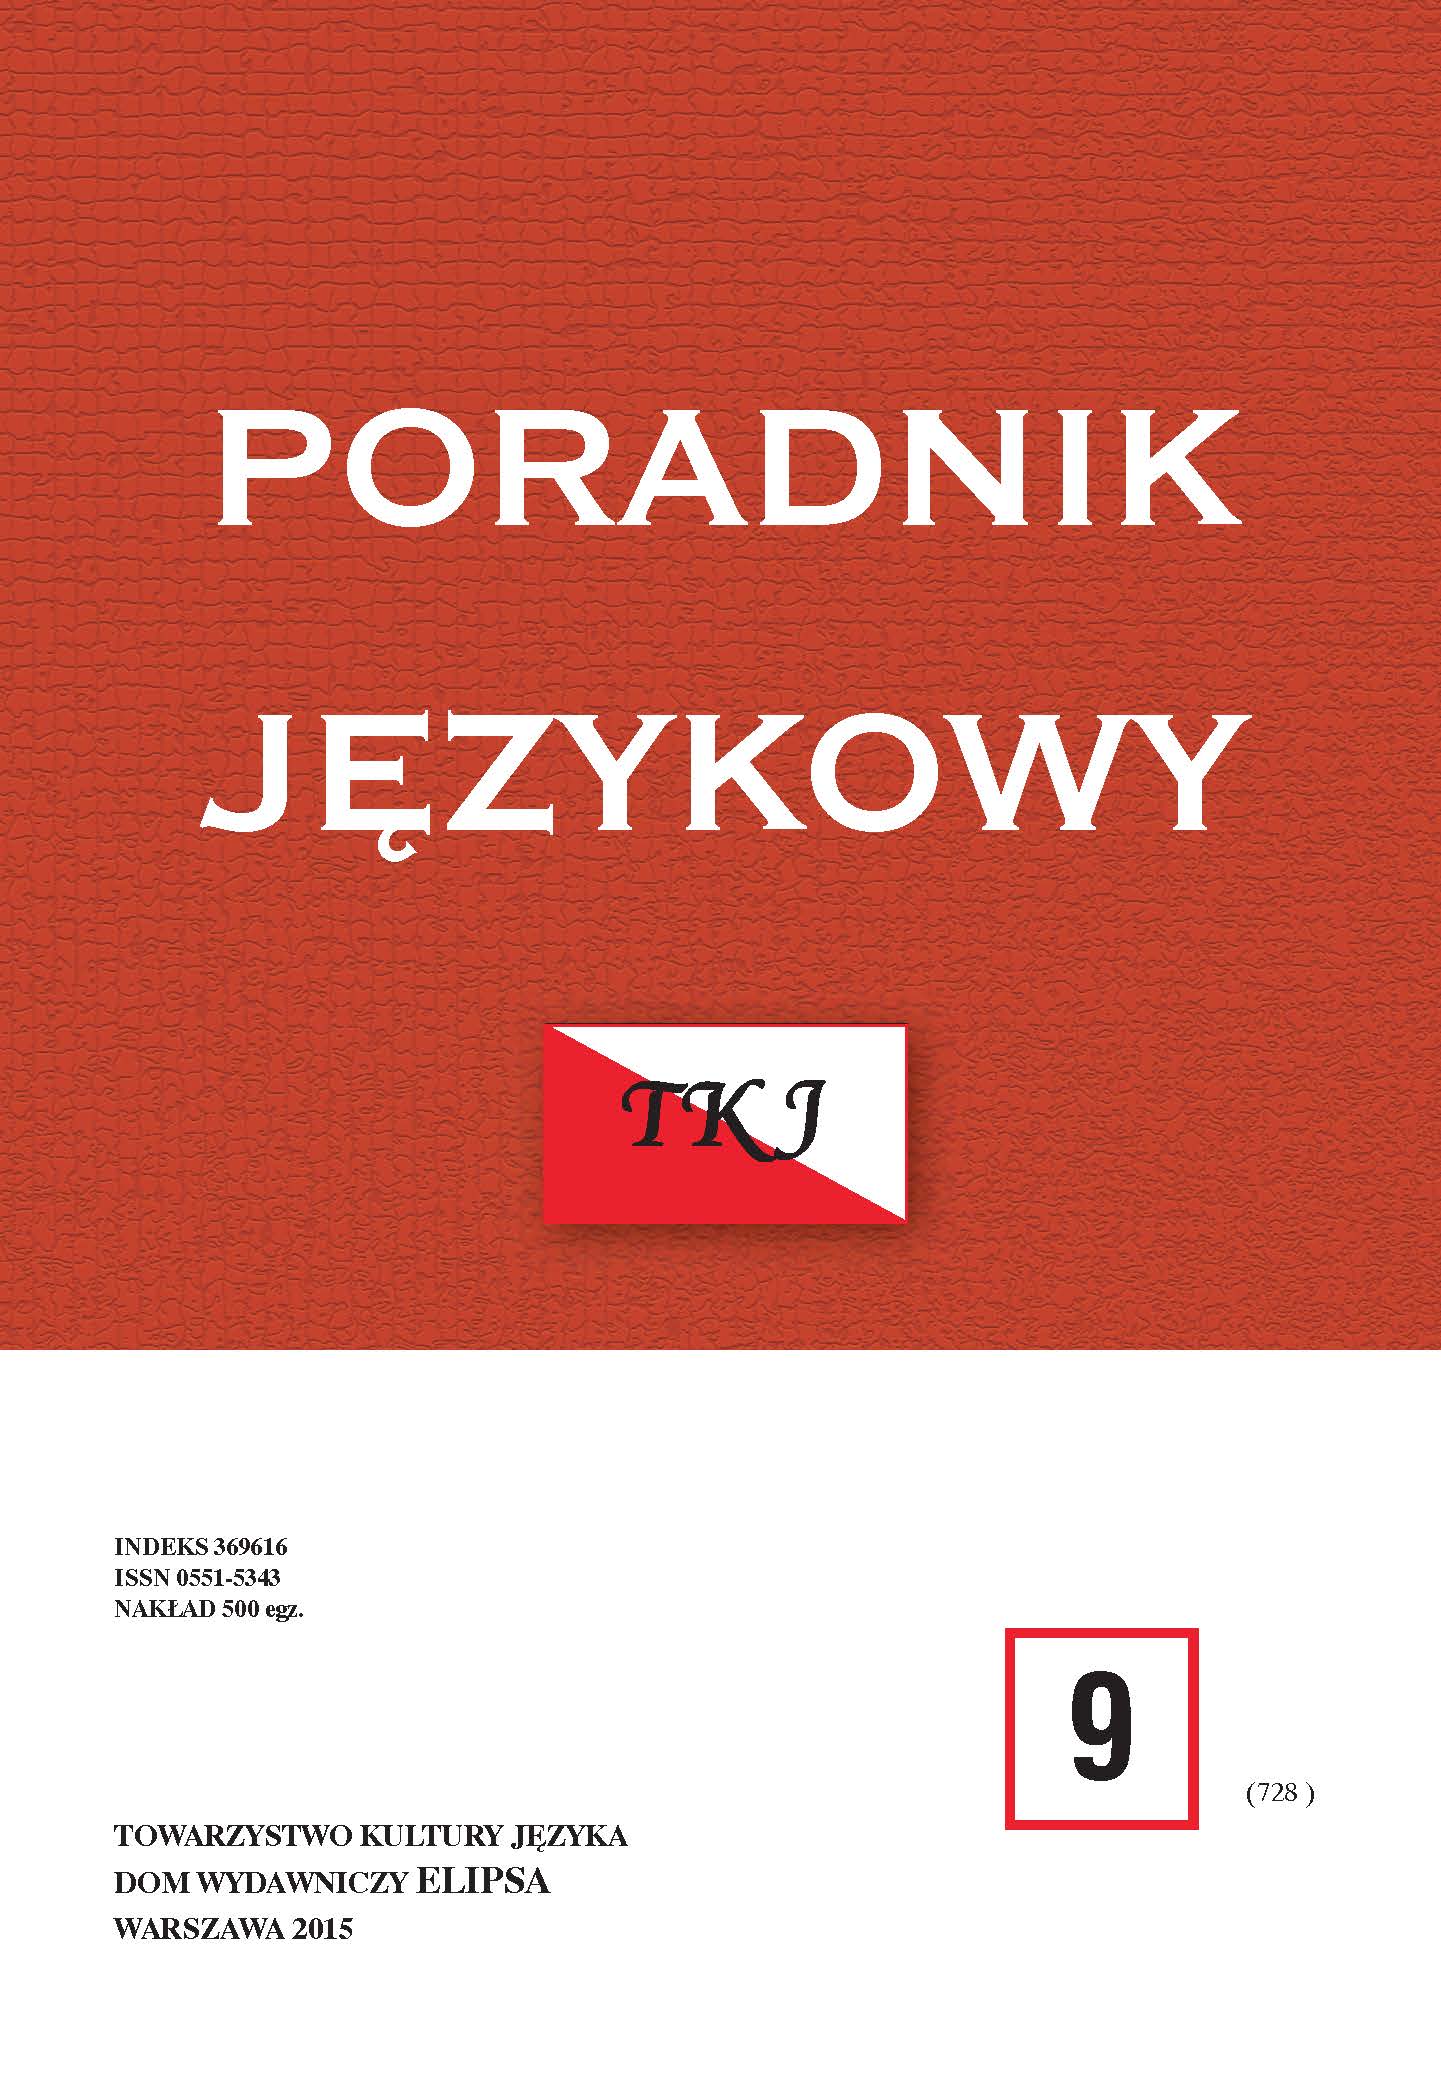 JUSTYNA POMIERSKA, PRZYSŁOWIA KASZUBSKIE. STUDIUM Z PAREMIOGRAFII I PAREMIOLOGII, Gdańsk 2013, ss. 696 Cover Image